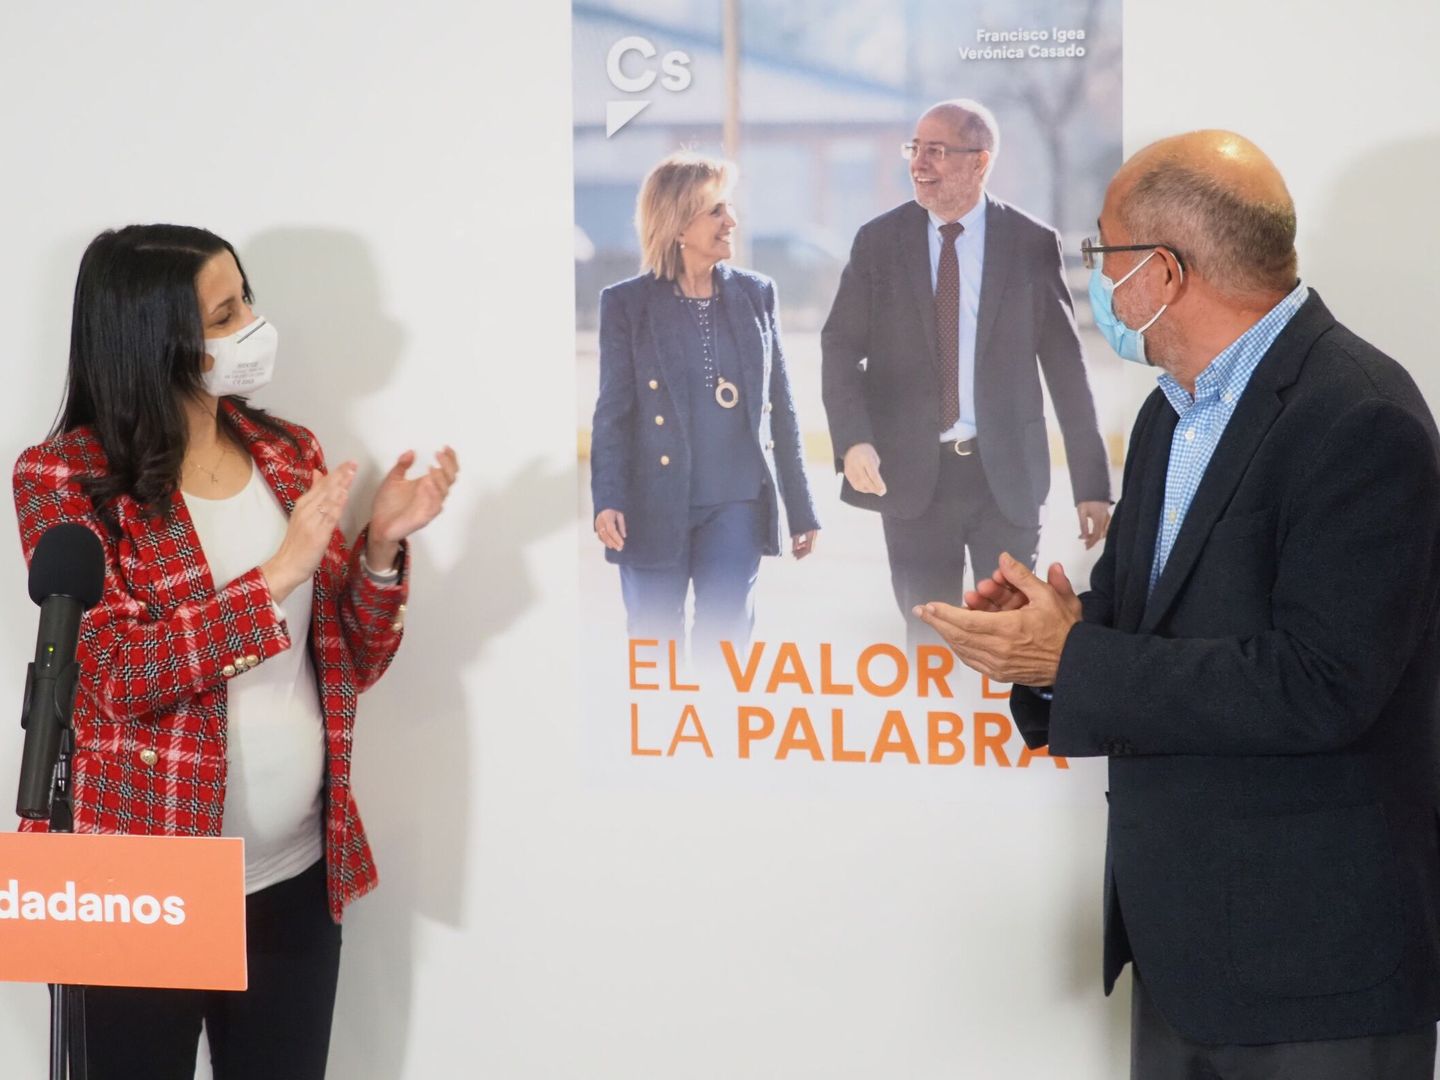 Arrimadas e Igea presentan uno de los carteles de campaña en que se puede ver al candidato junto a Verónica Casado. (EFE)